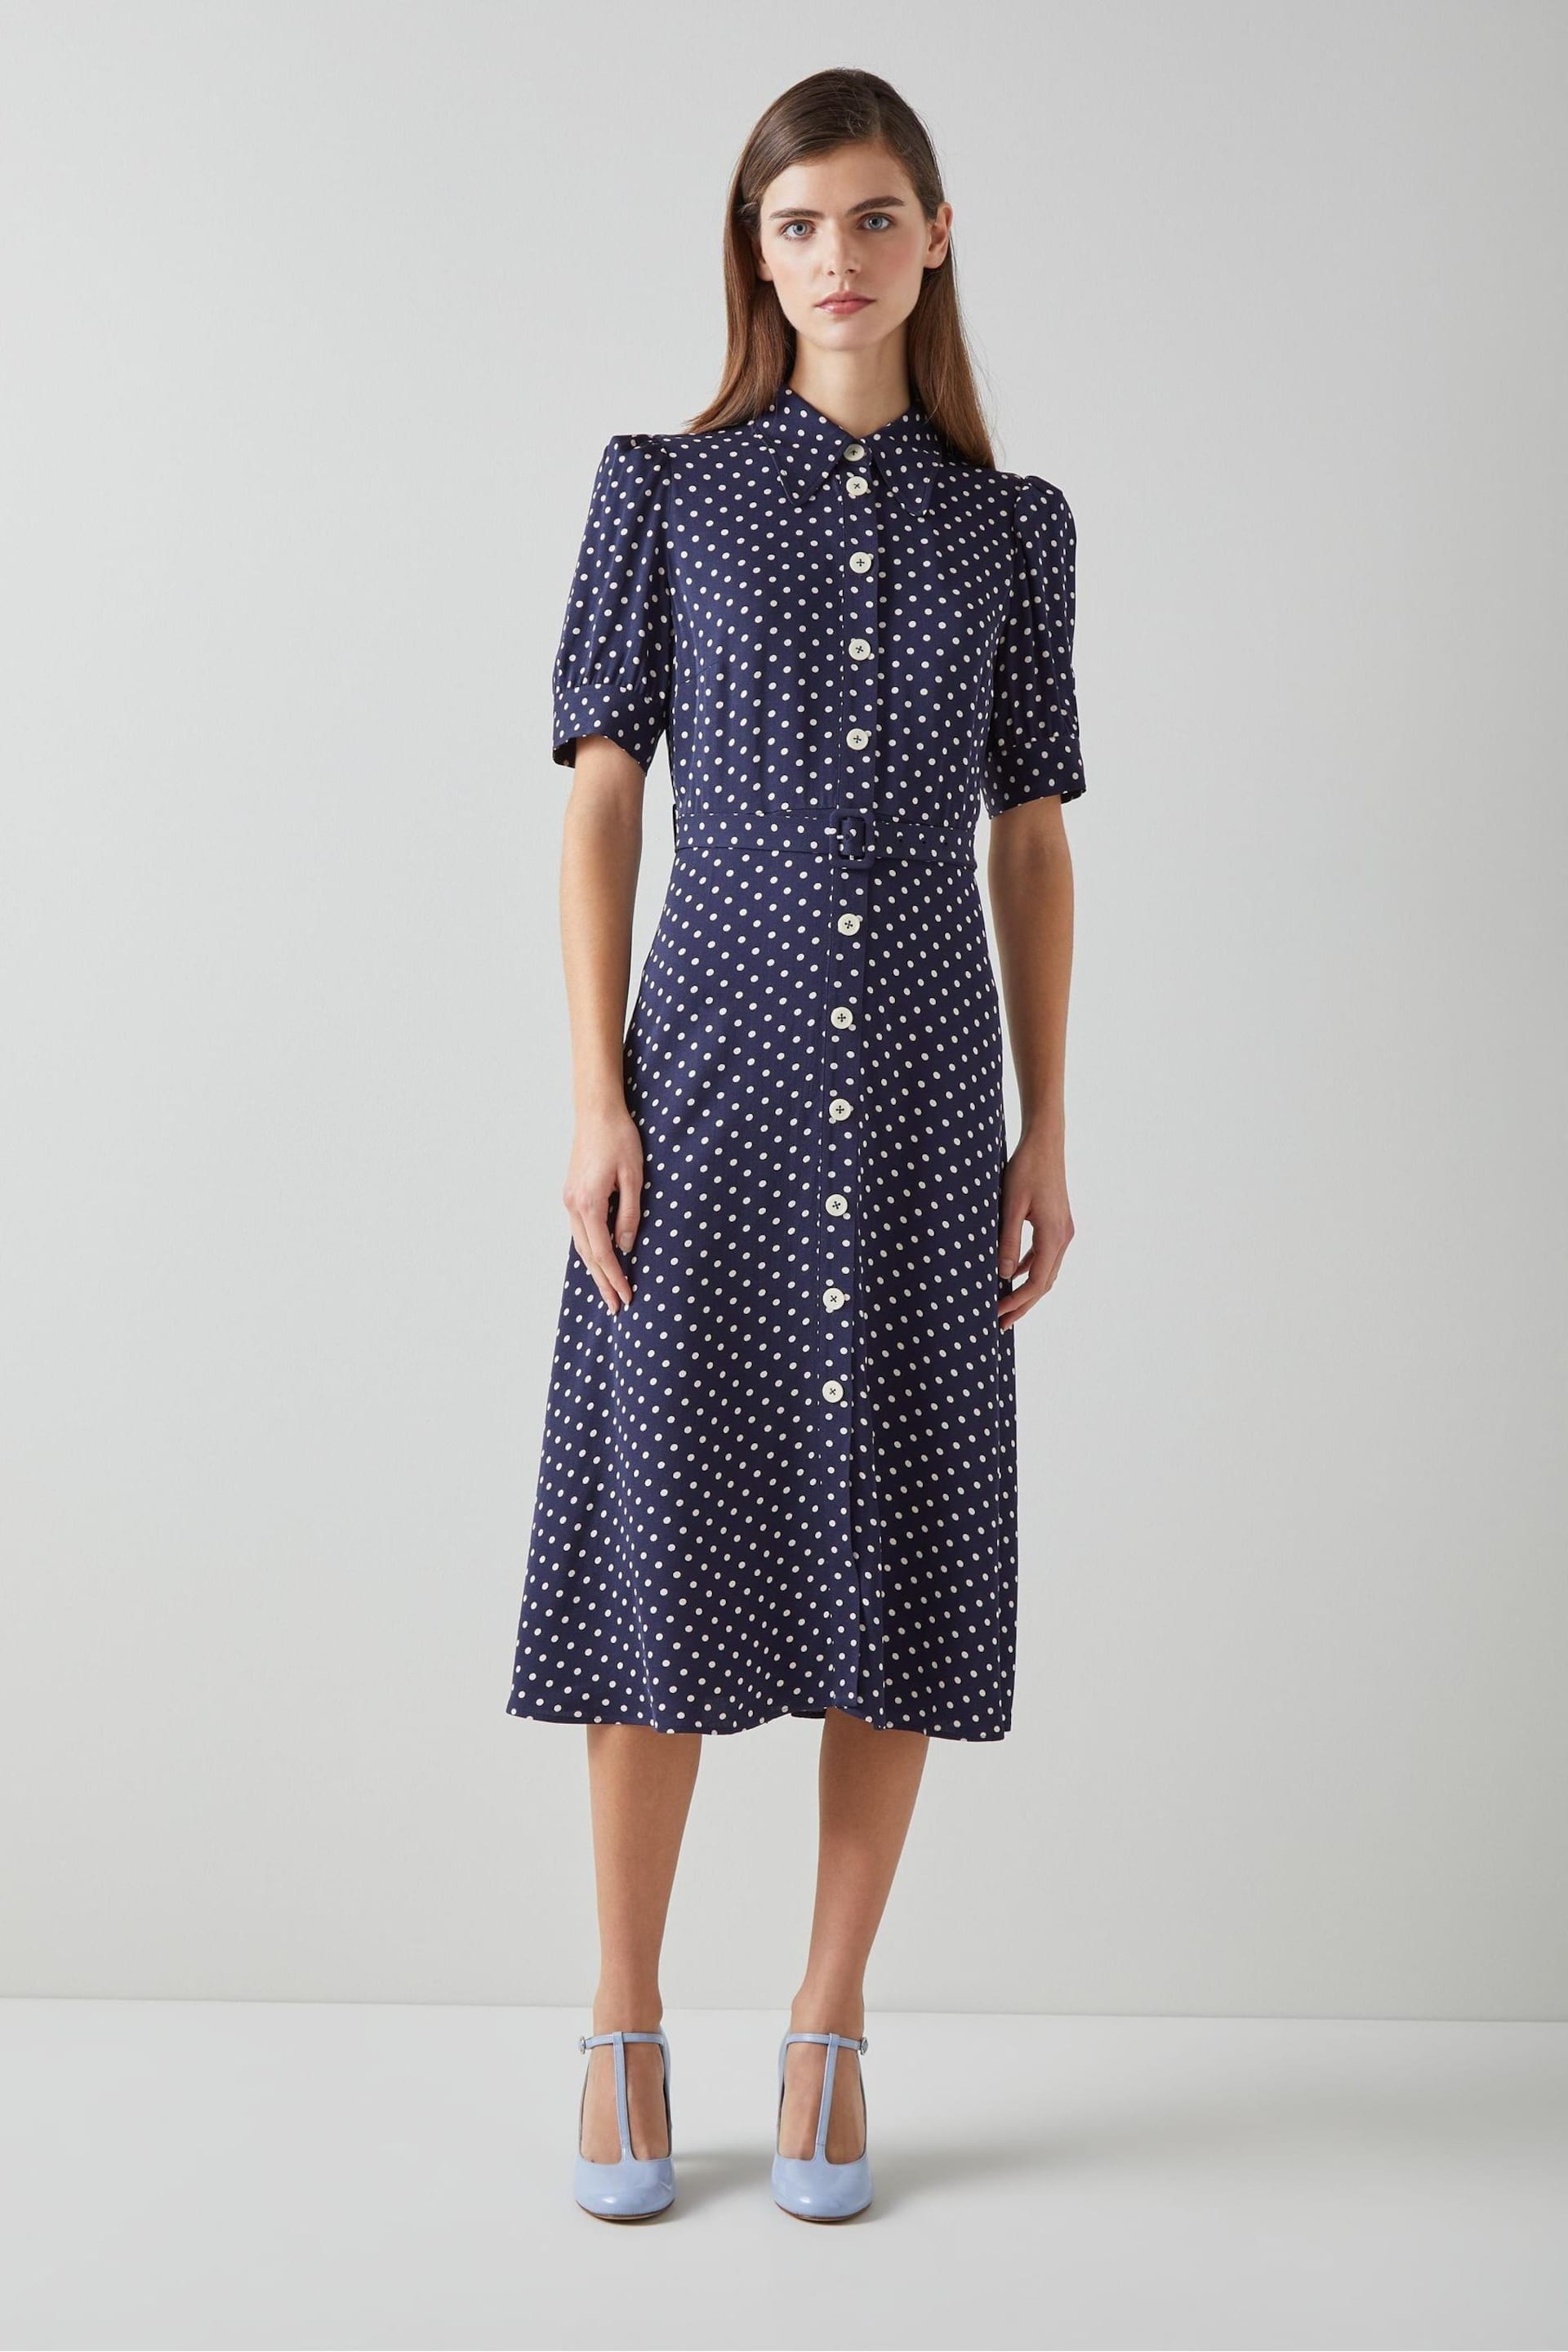 LK Bennett Valerie Modernist Print Shirt Dress - Image 1 of 2